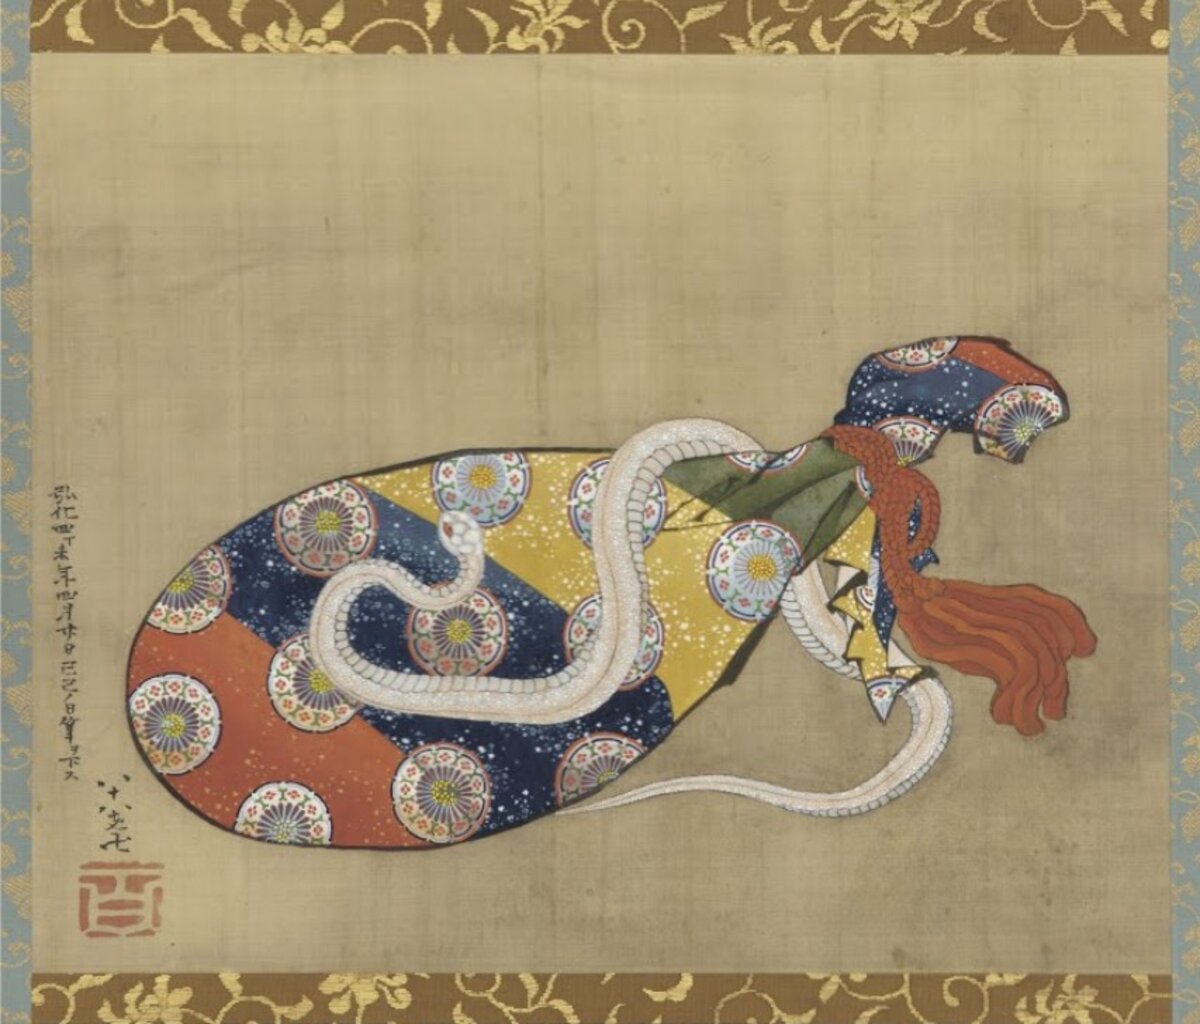 Kacusika Hokuszai az egyik leghíresebb japán képzőművész, fametsző és ukijo-e festő az Edo-korban. Ő alapozta meg a tájképet ábrázoló fametszetek világhírét Utagava Hirosige mellett. Munkássága rendkívül terjedelmes, feltehetően több mint harmincezer műve volt, továbbá közel négyszáz könyvet illusztrált. Egyik leghíresebb műve a Fuji harminchat látképe, amely 1830-36 között készült, fadúcos nyomtatással. Nagy hatással volt rá többek között a kínai festészet és Szessú Tójó, aki a japán tusfestészet egyik legjelentősebb alakja.
